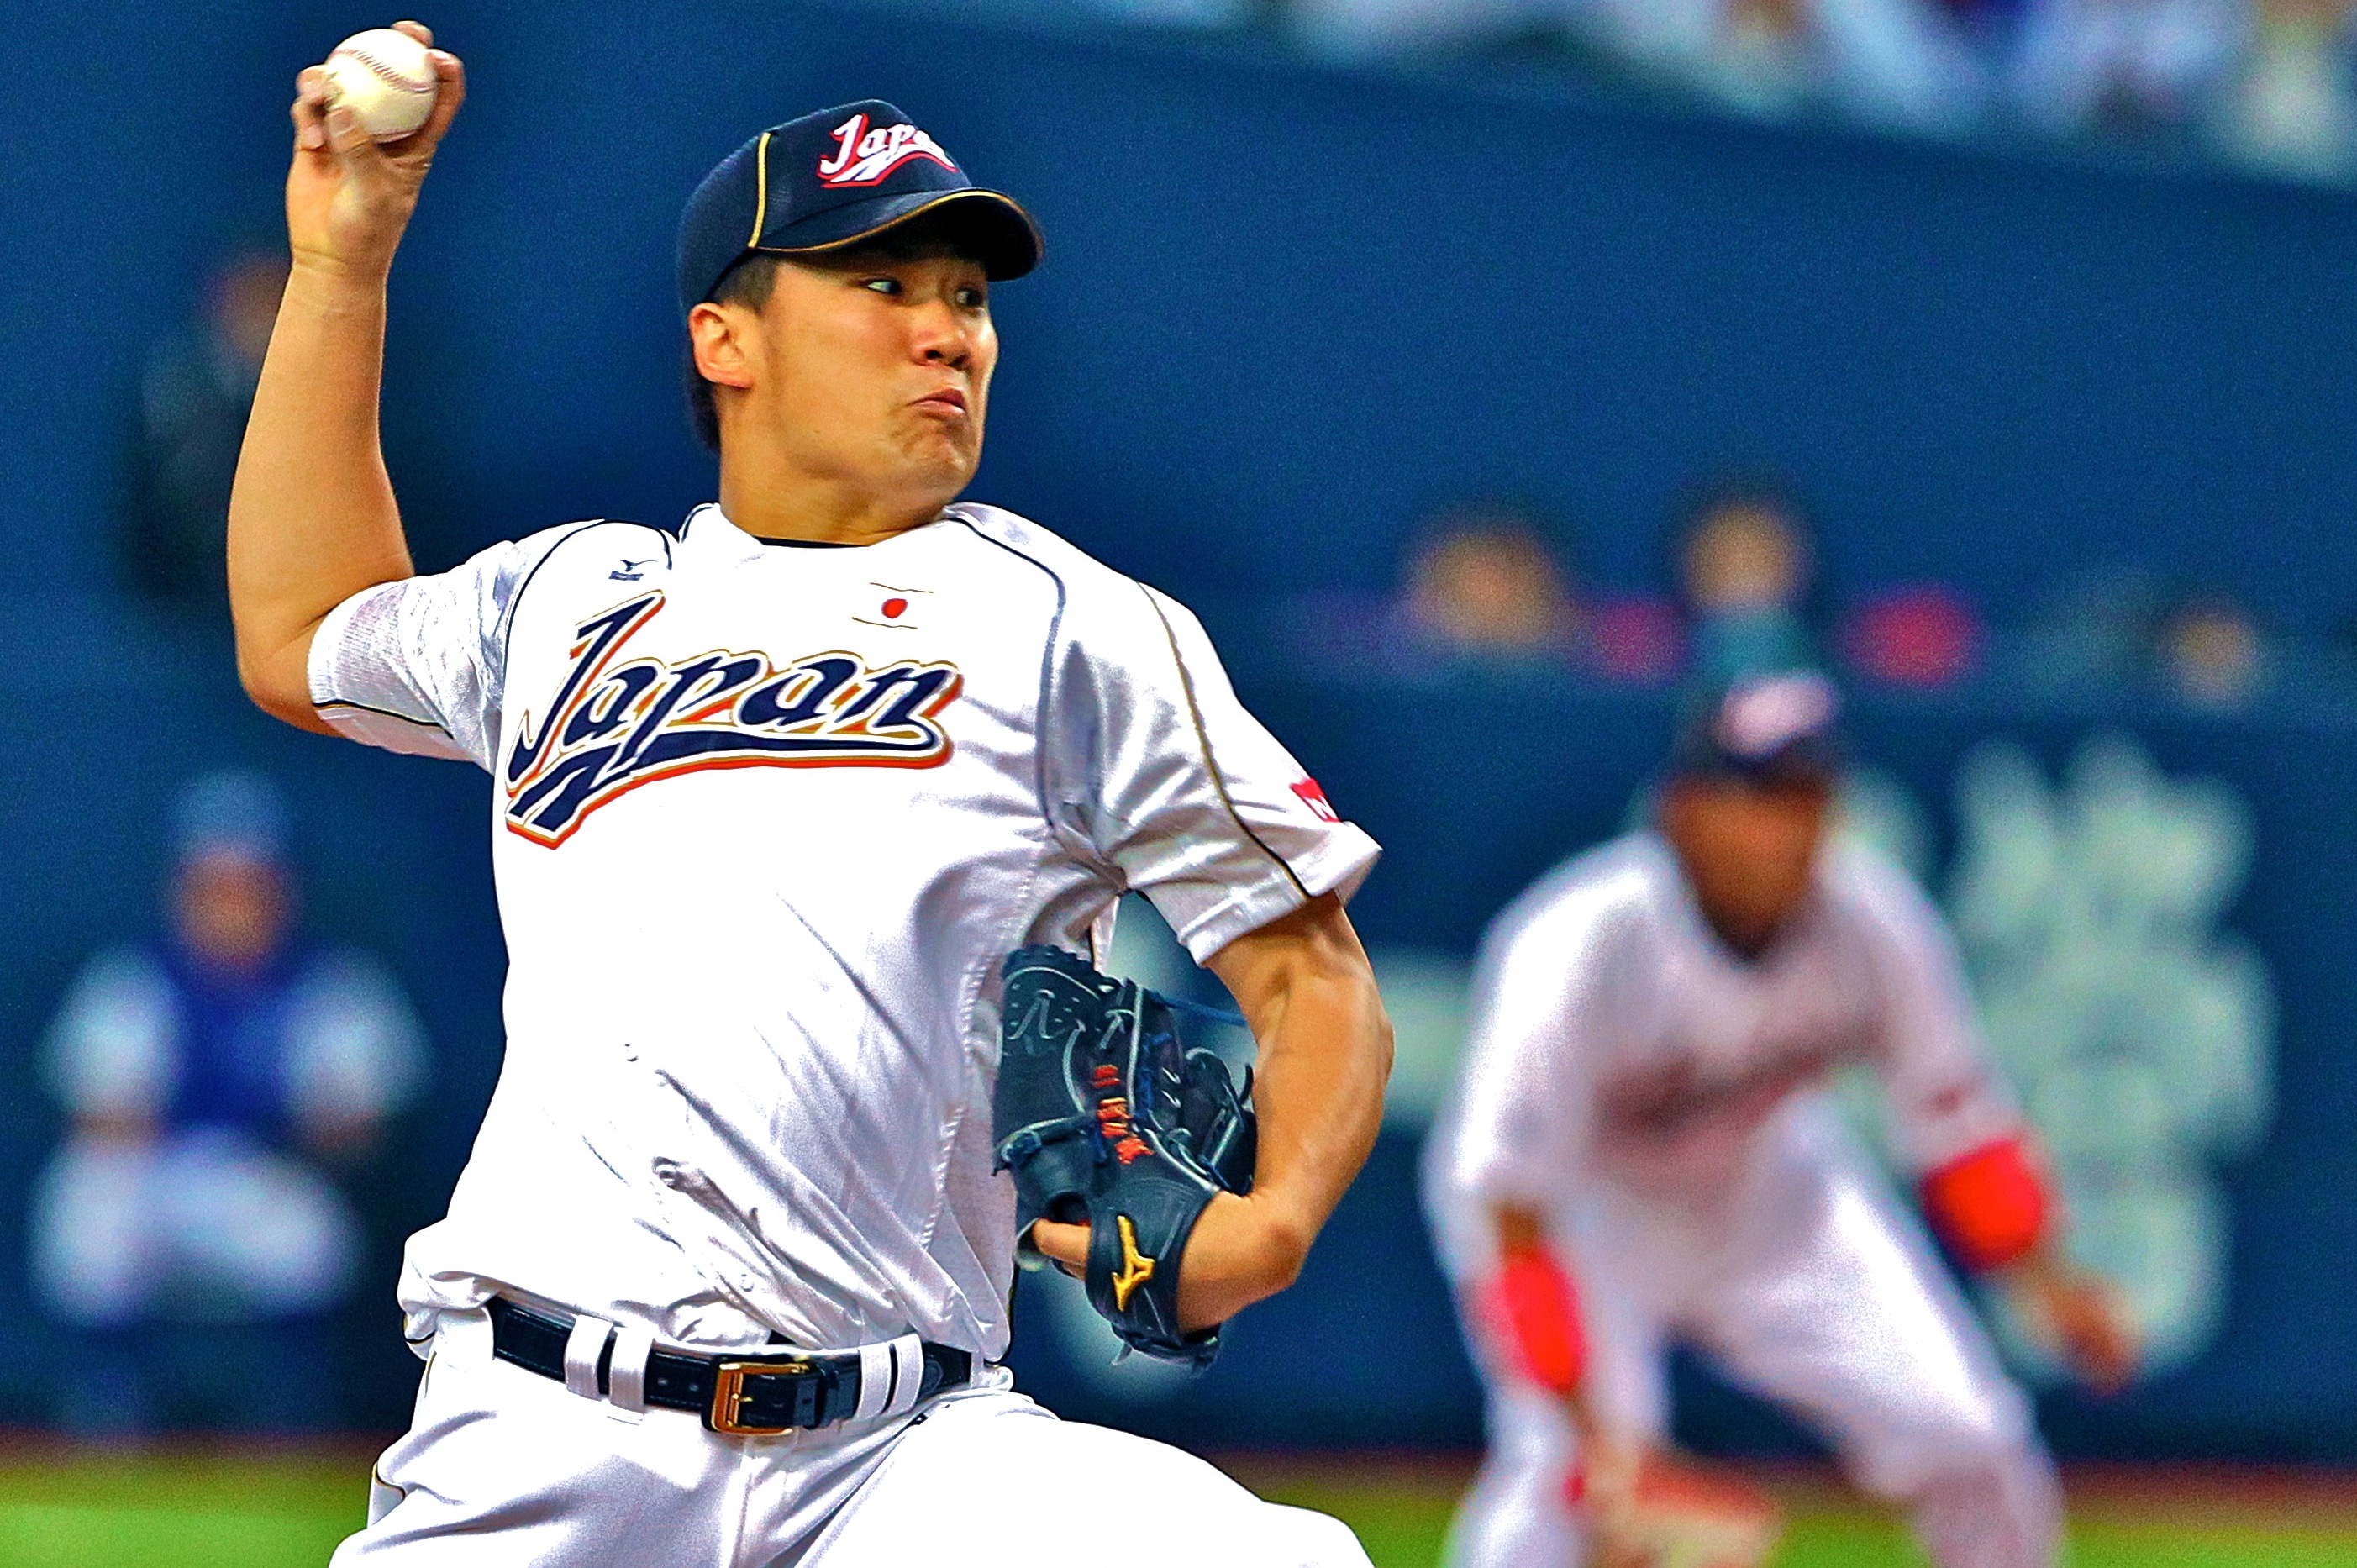 Yankees sign Masahiro Tanaka for 7 years, $155M